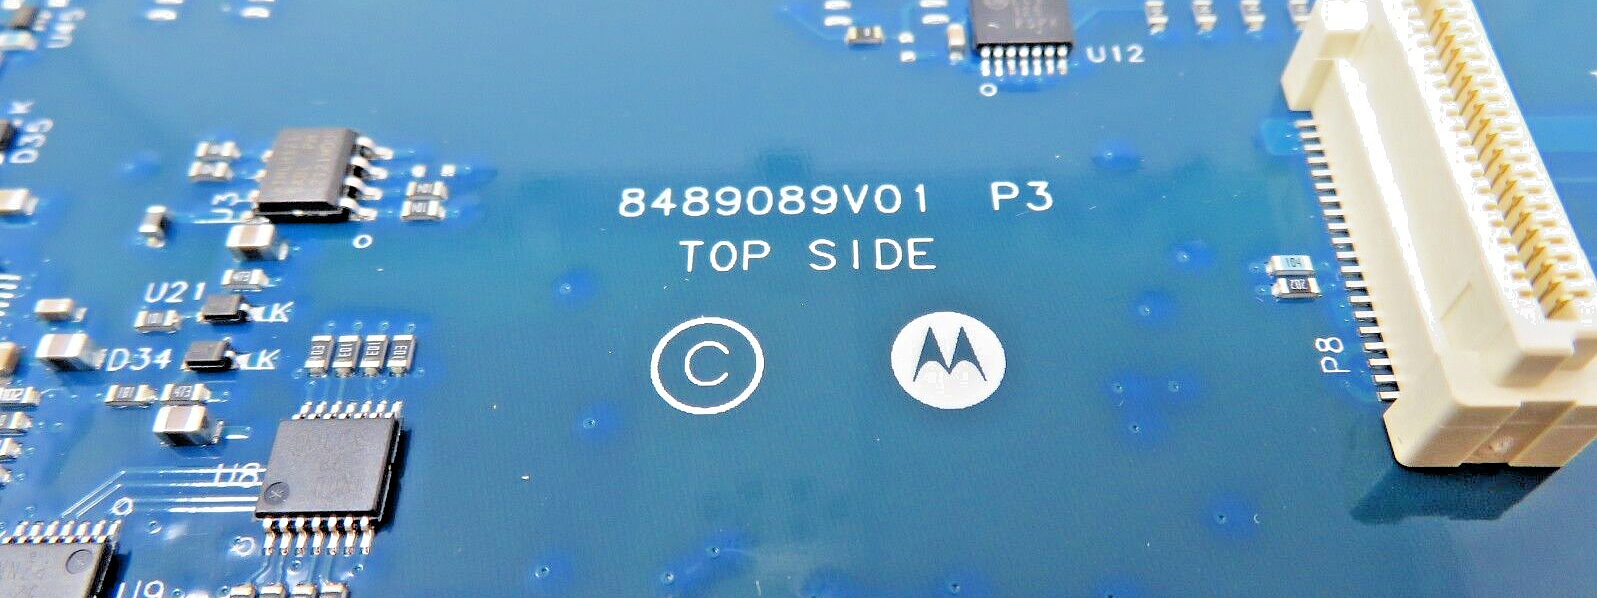 Motorola FLN3552A Digital Input Module 16DI FAST 24V RTU Compatible With ACE3600